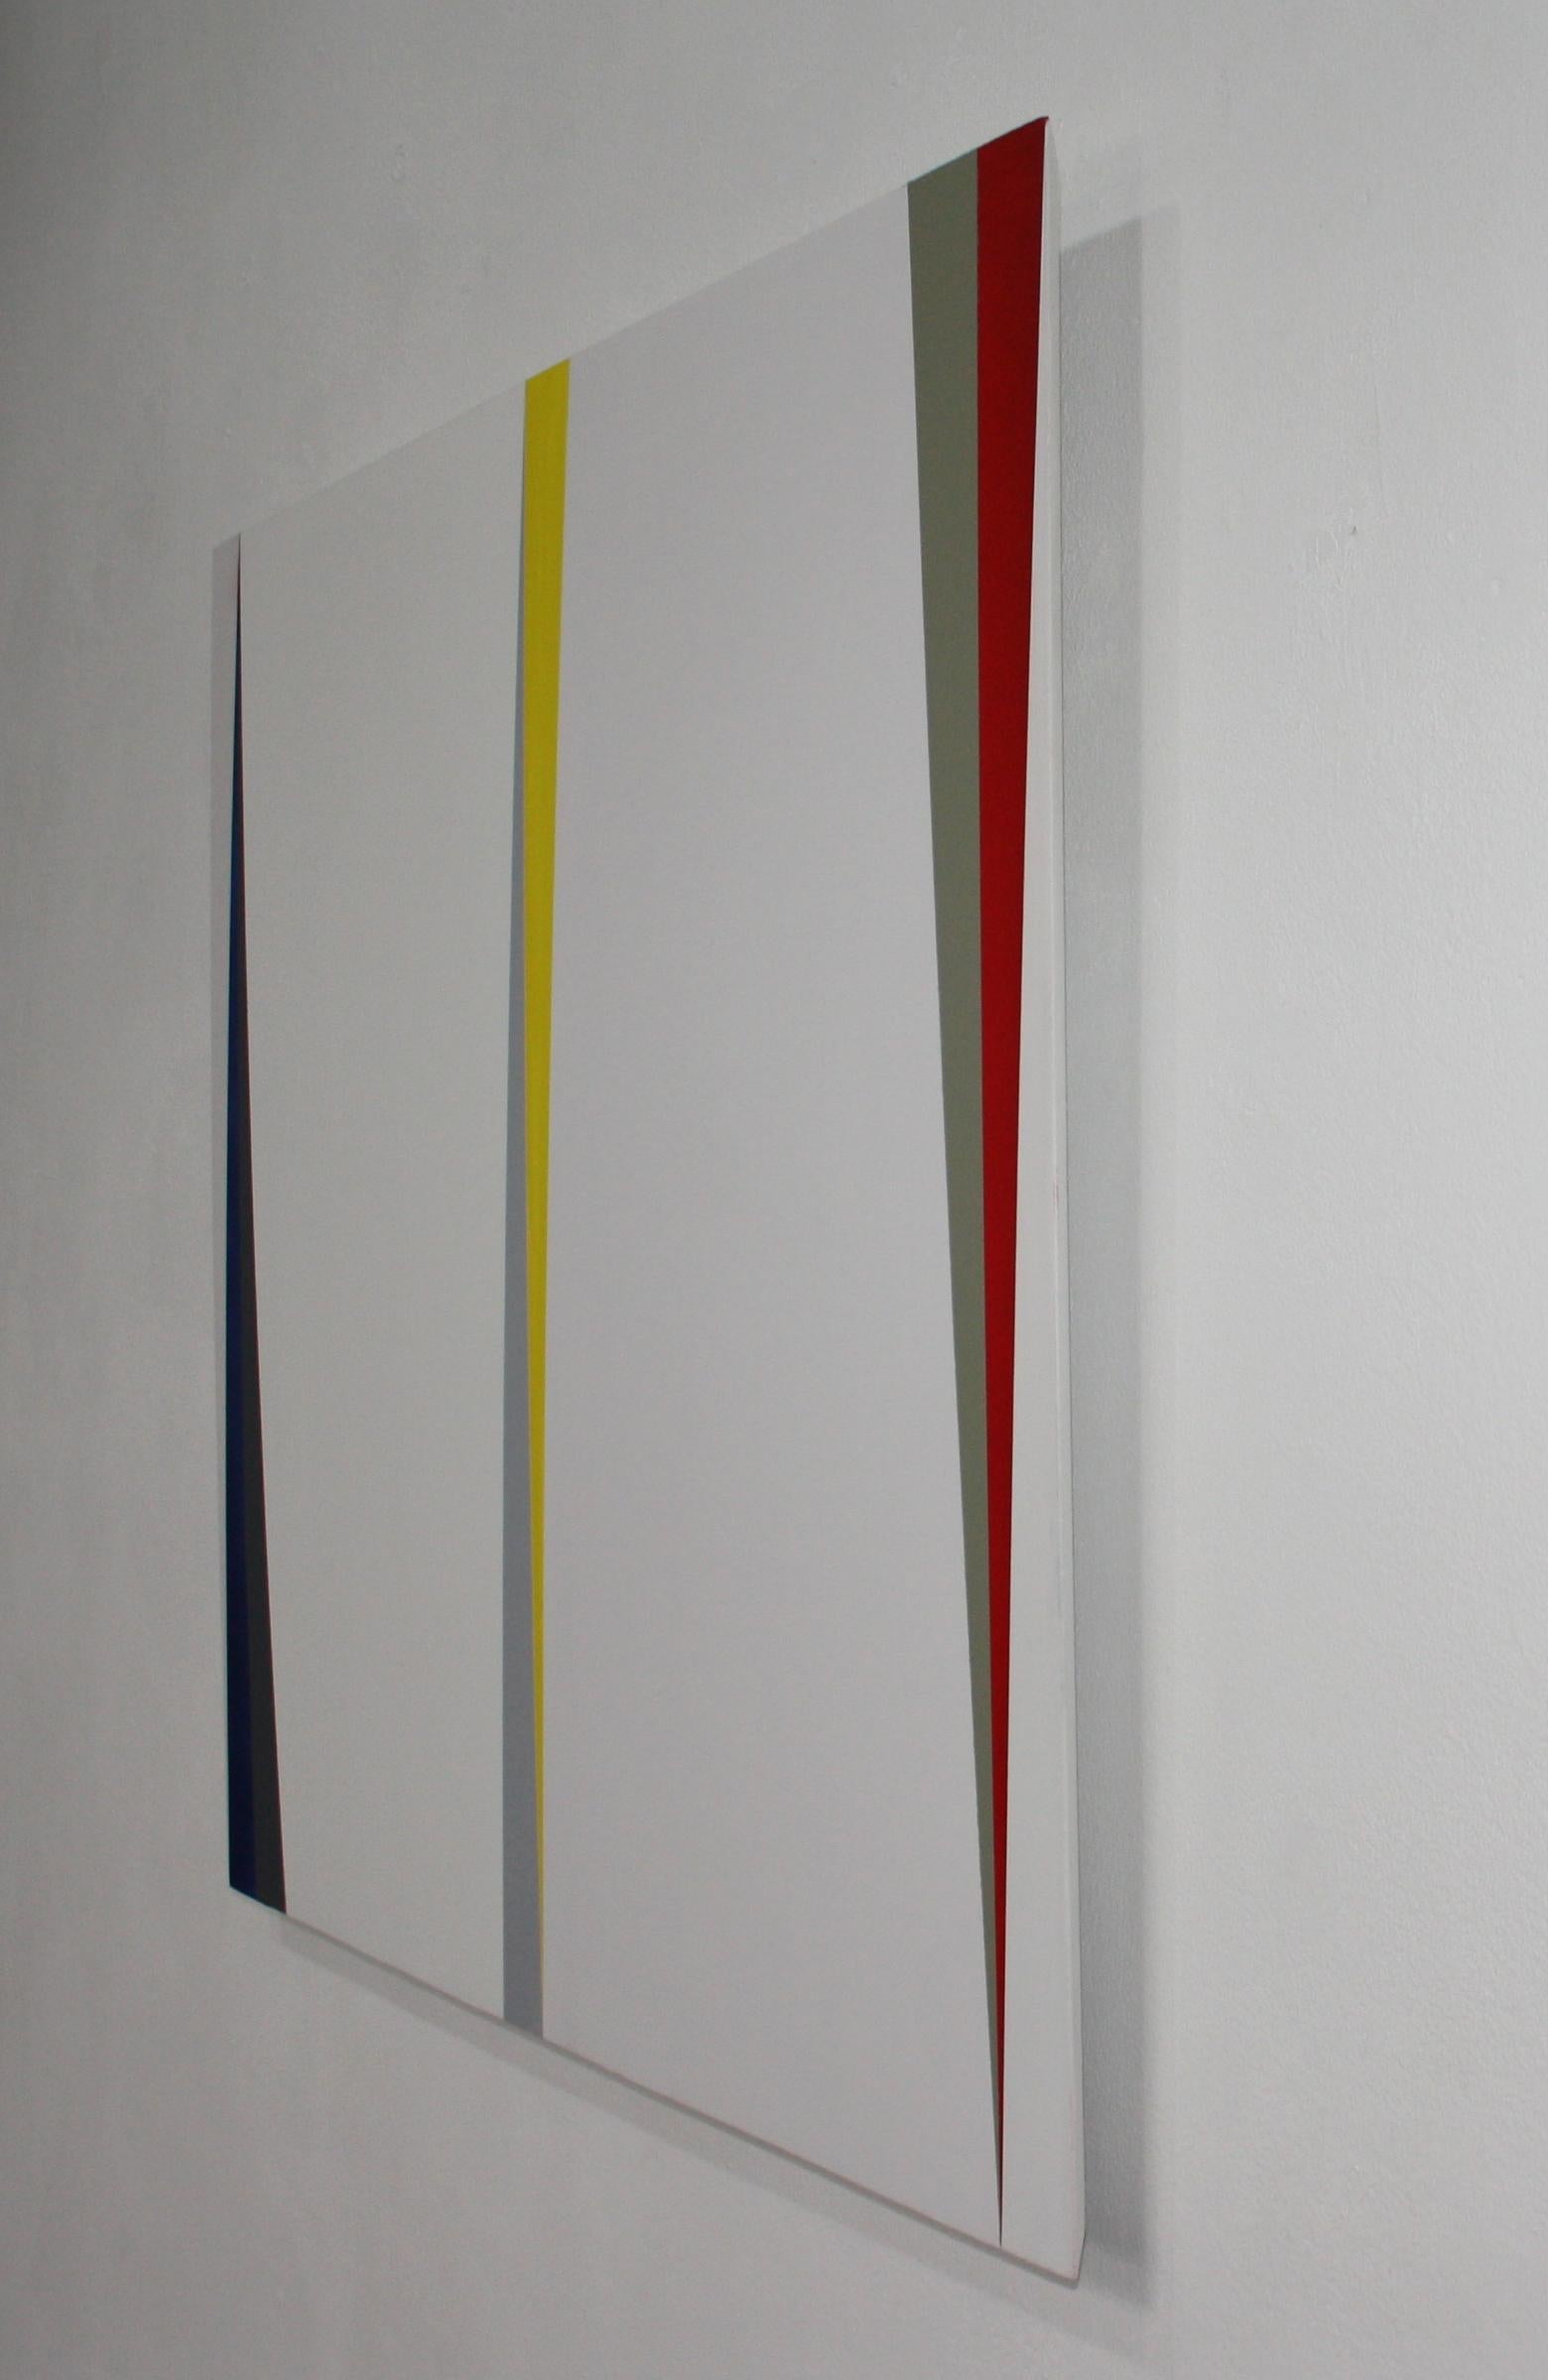 Die Werke von Martin Gerwers sind zwischen den Gattungen Malerei und Skulptur angesiedelt. Mit ihnen untersucht Gerwers das Verhältnis von Farbe und Raum. Er tut dies, indem er entweder dreidimensionale, mehrfarbige Objekte schafft, die nur dann